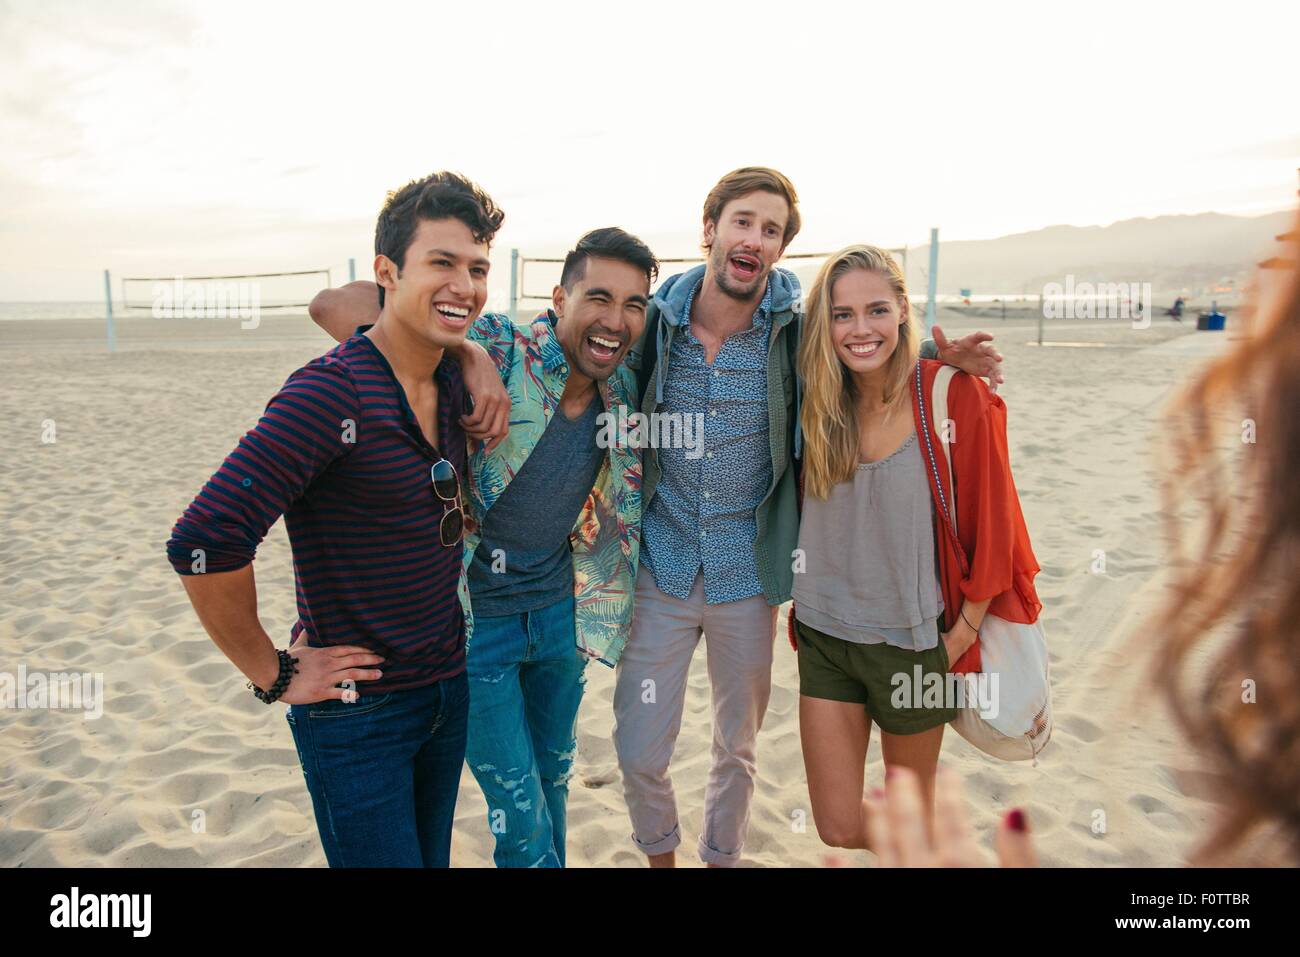 Gruppo di amici in piedi insieme sulla spiaggia, ridendo Foto Stock